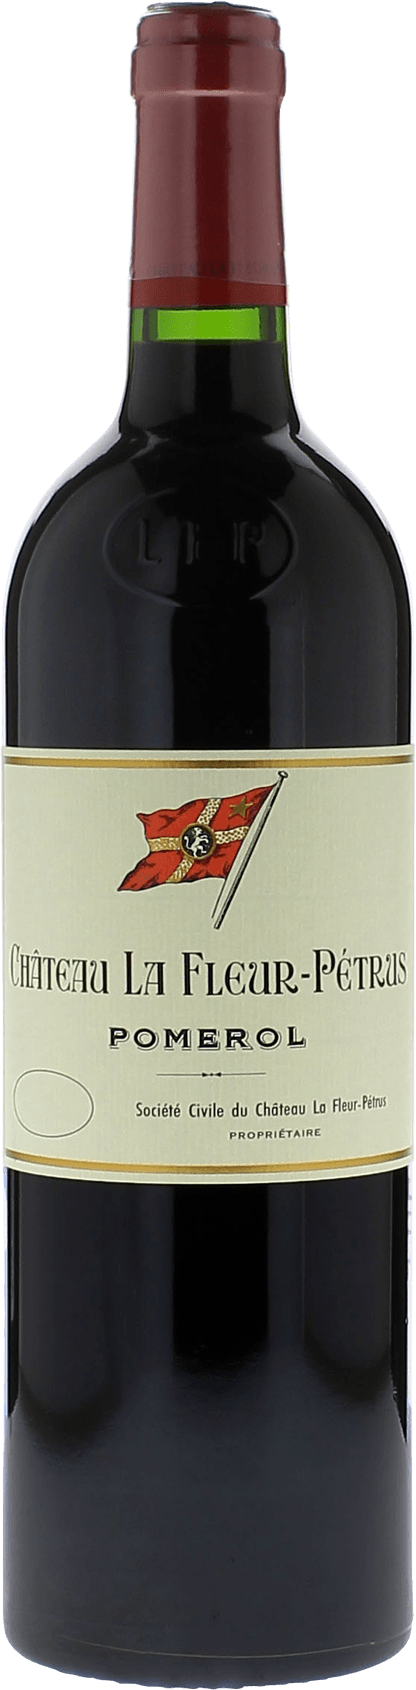 La fleur petrus 2005  Pomerol, Bordeaux rouge